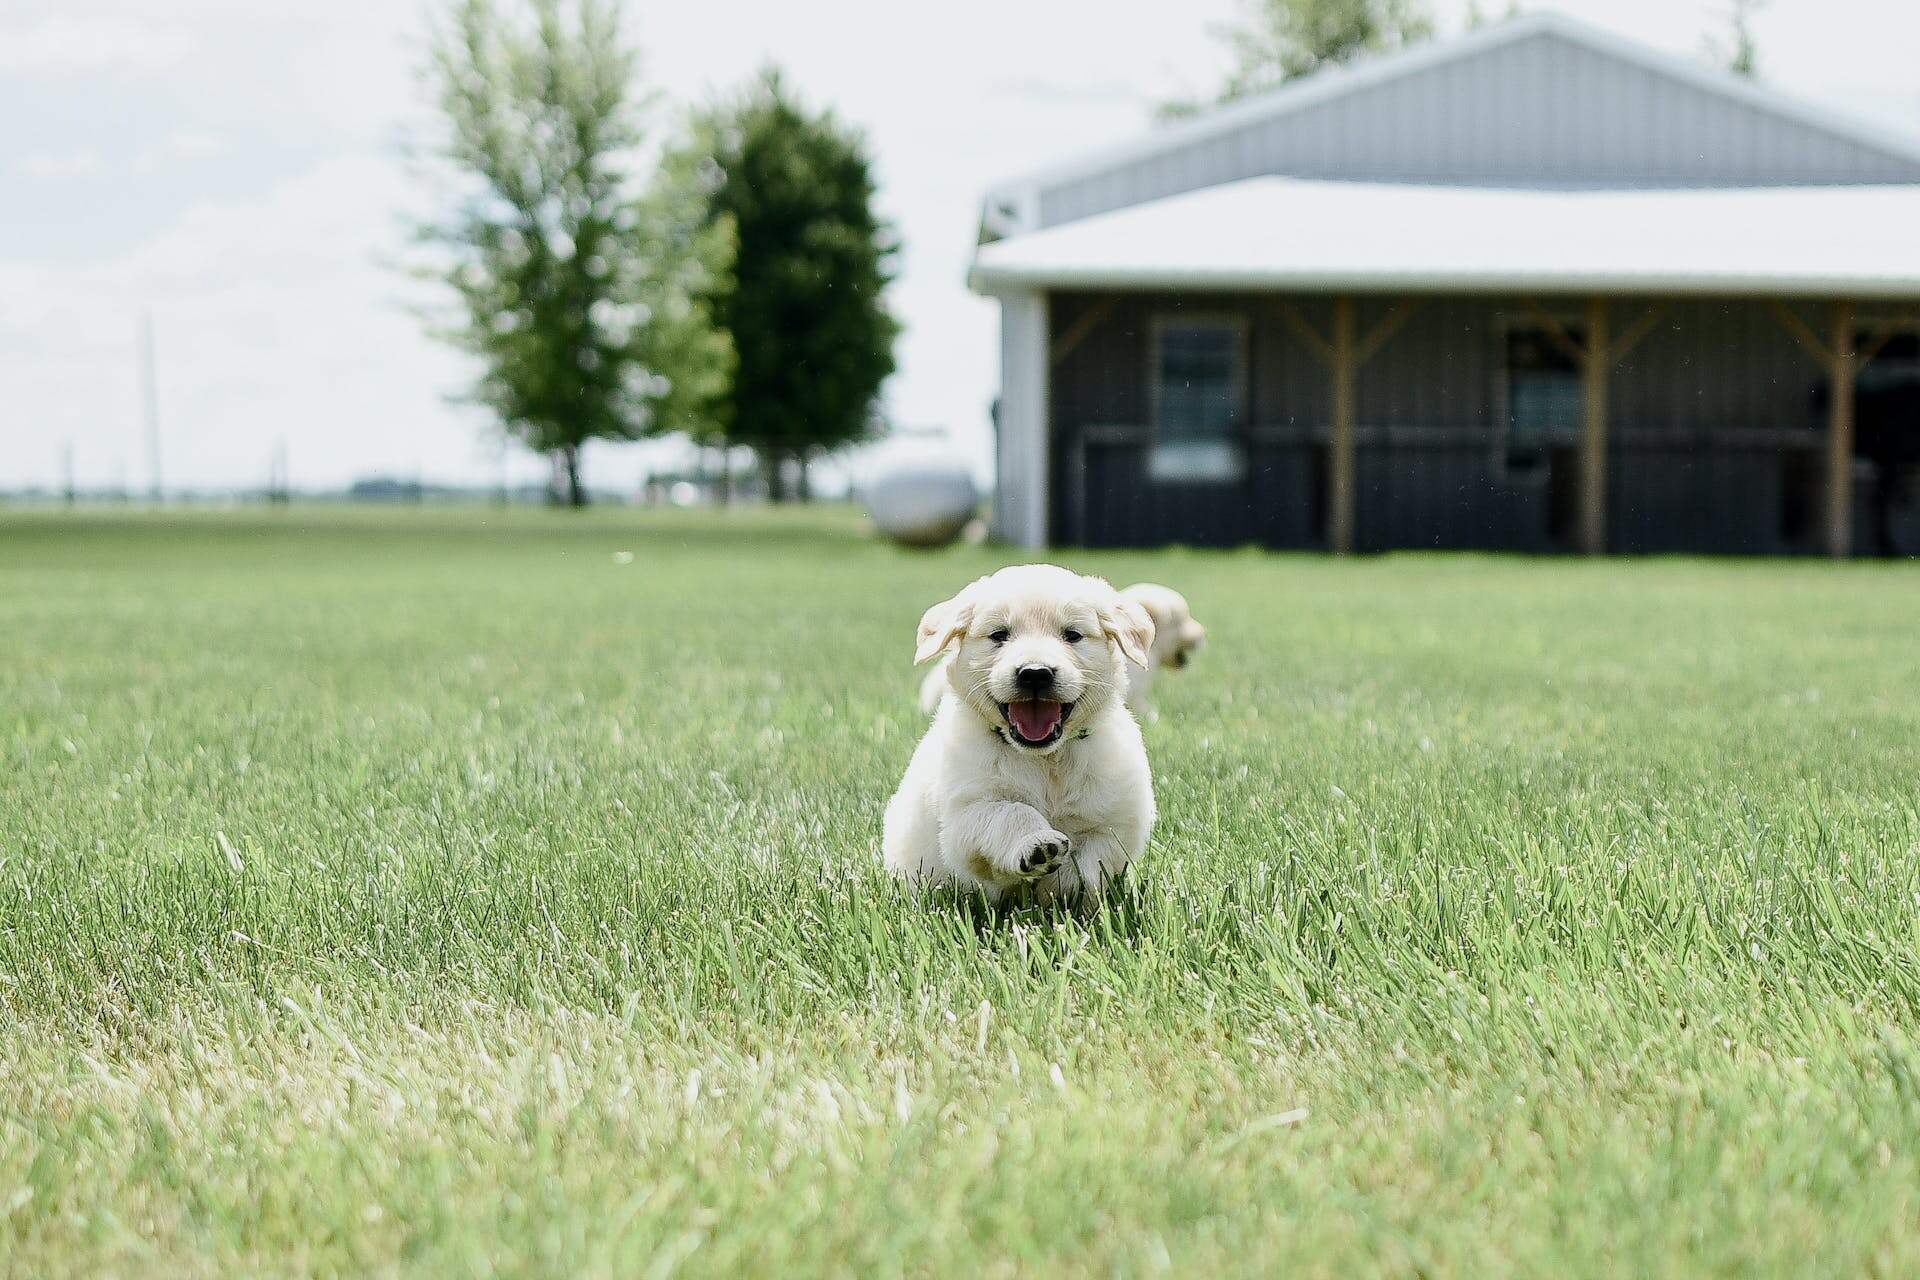 A Golden Lab puppy running through an open field